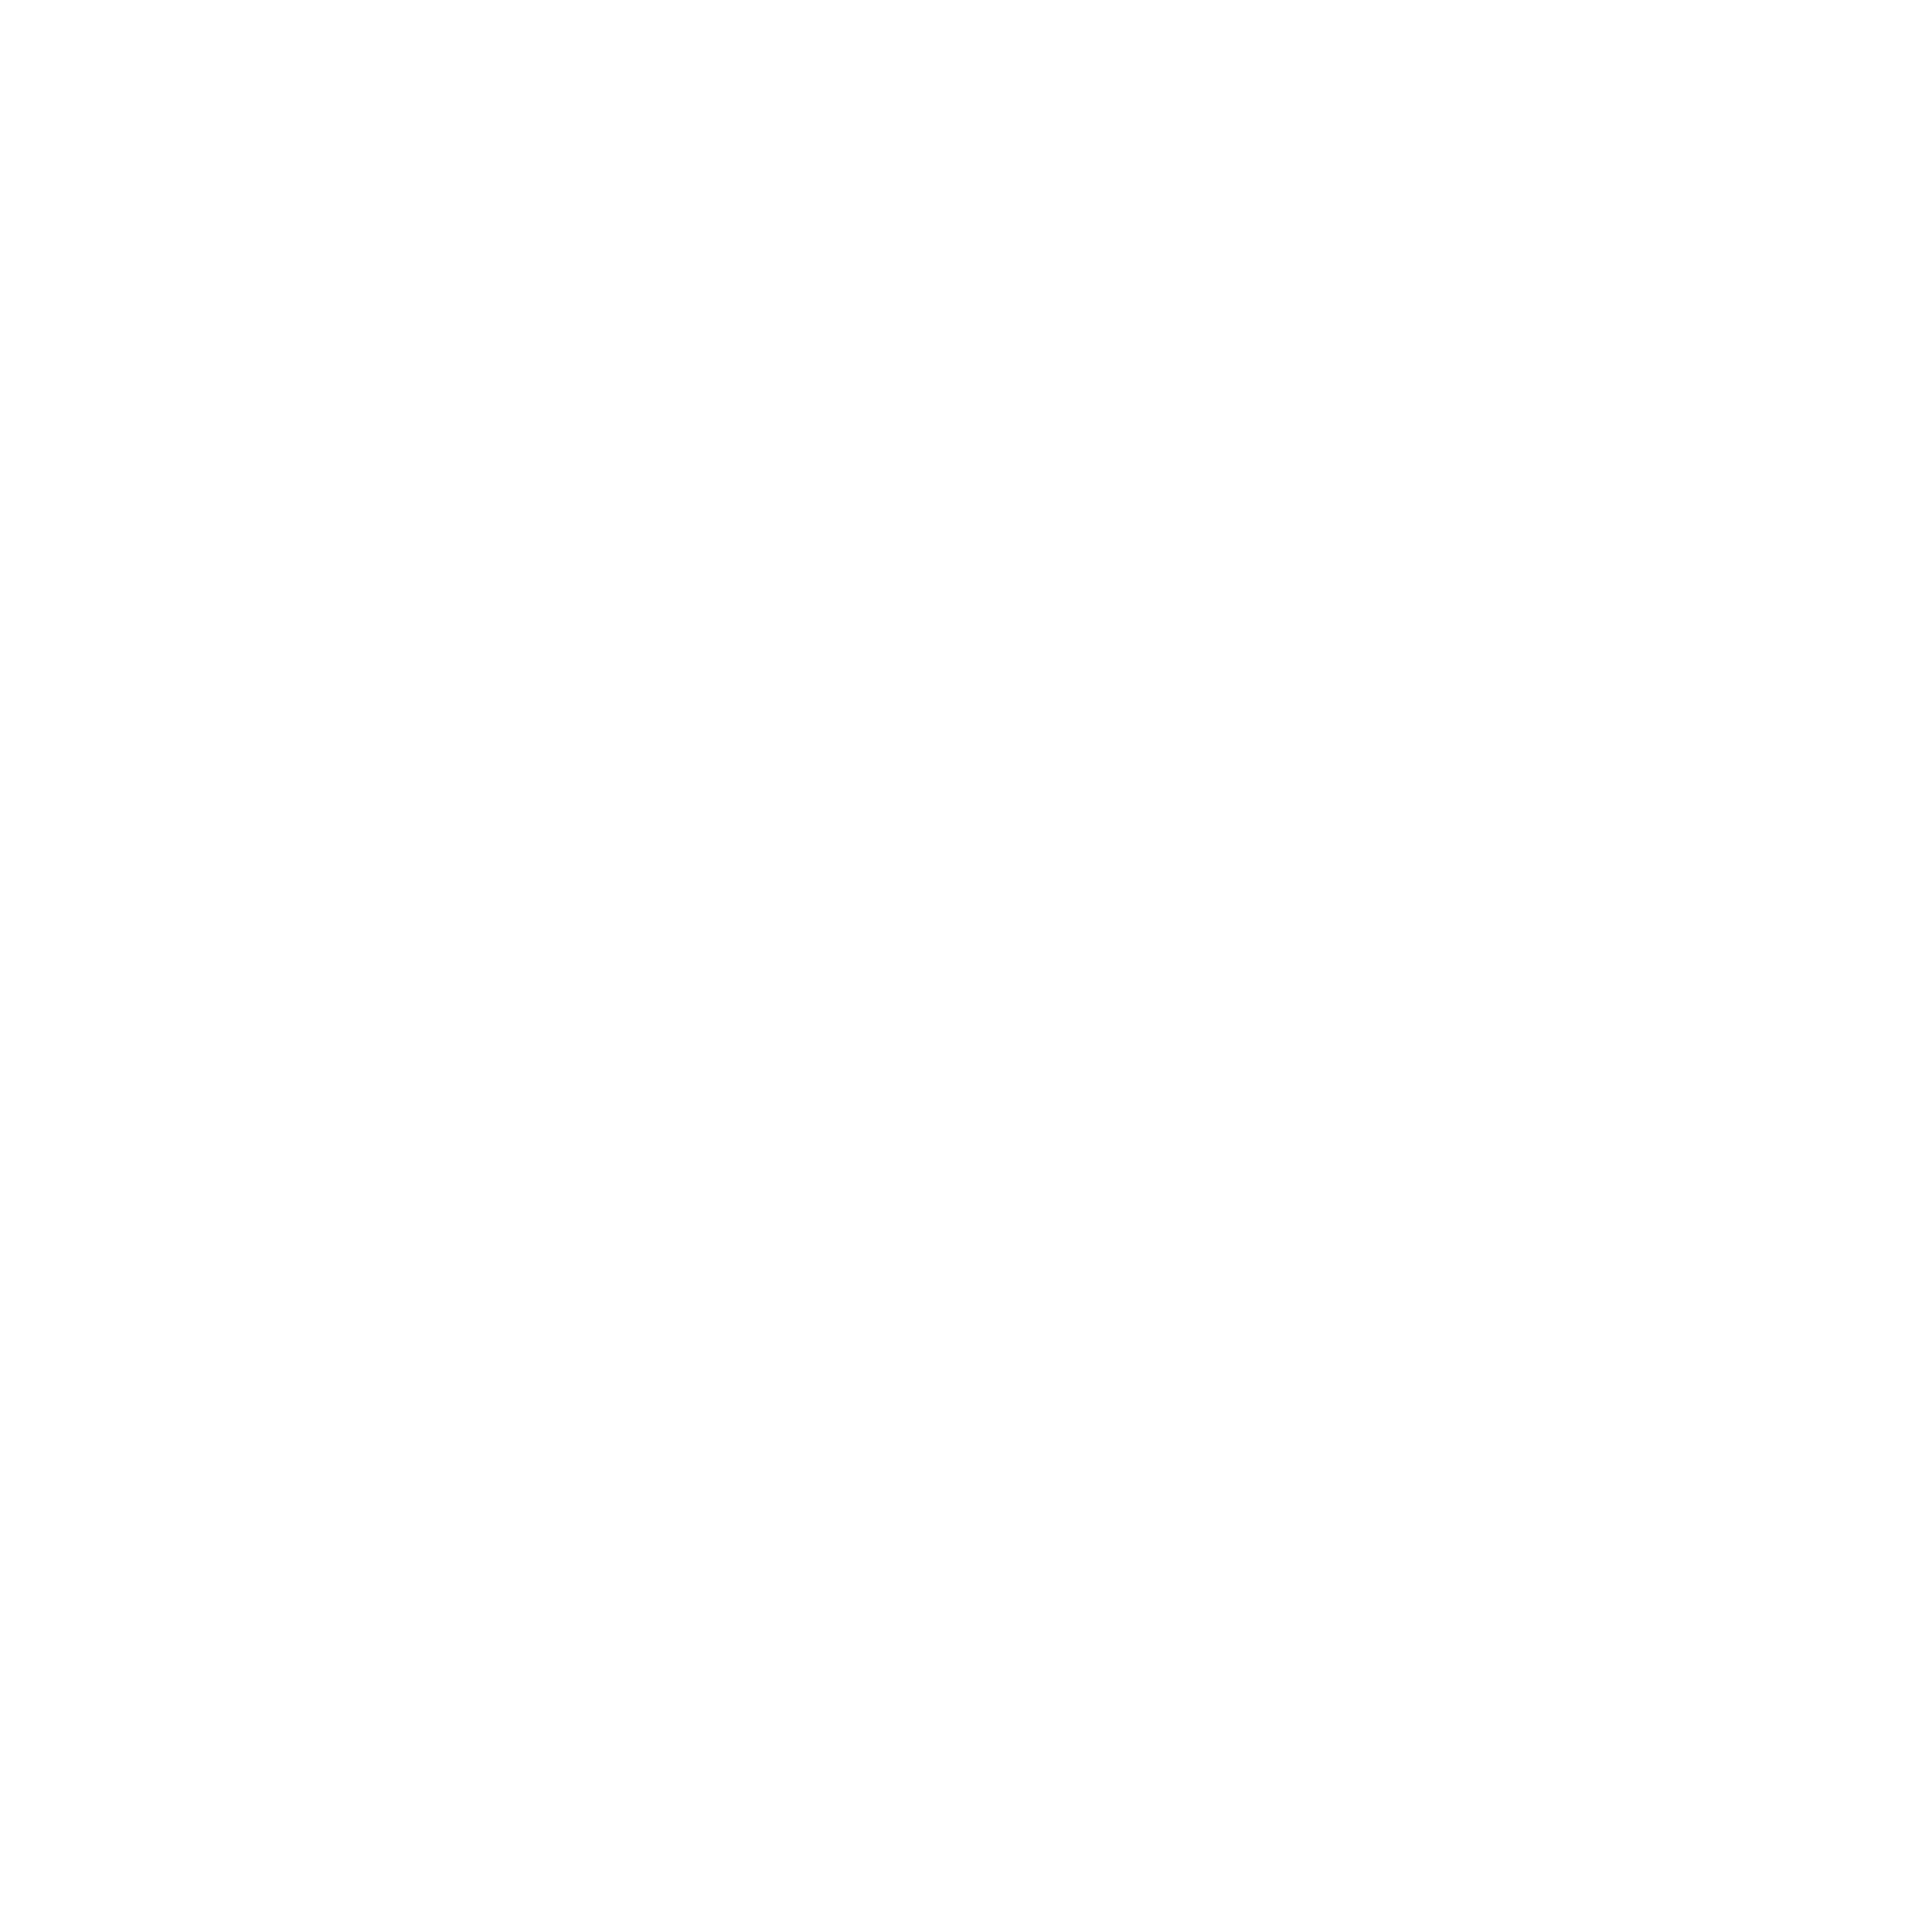 V1 Joburg Logos for Web 2022 Ball Family White